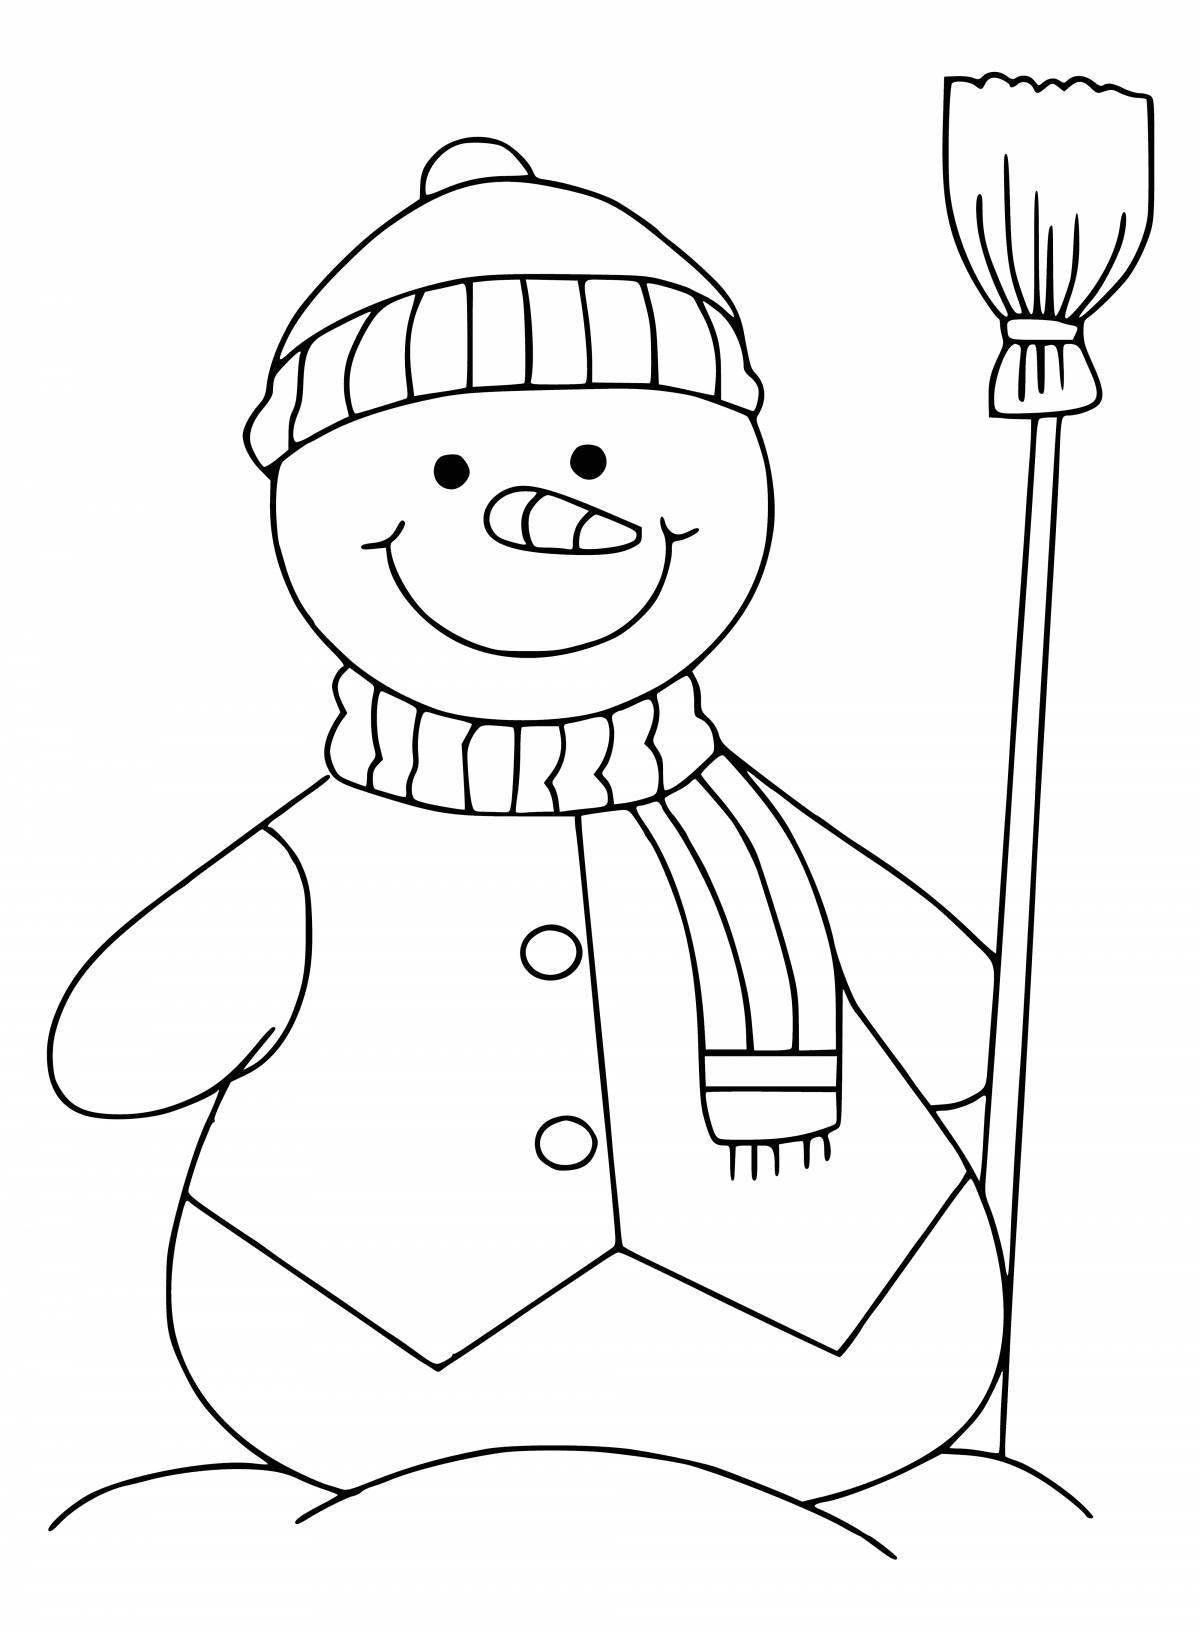 Веселые снеговики в вязаных шапках и шарфах